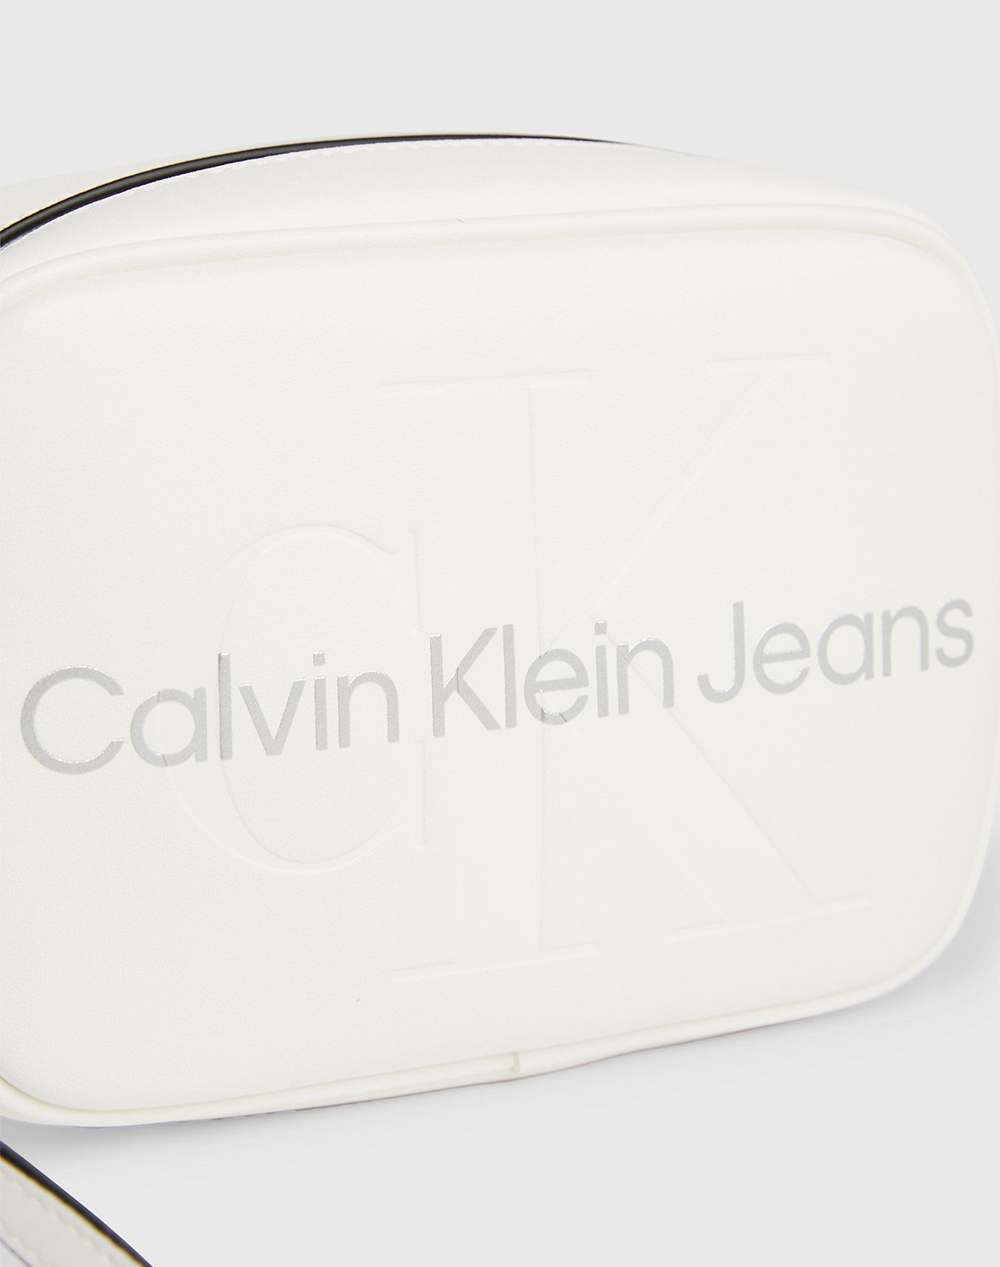 CALVIN KLEIN CAMERA BAG (Dimensions: 18 x 13 x 7 cm)